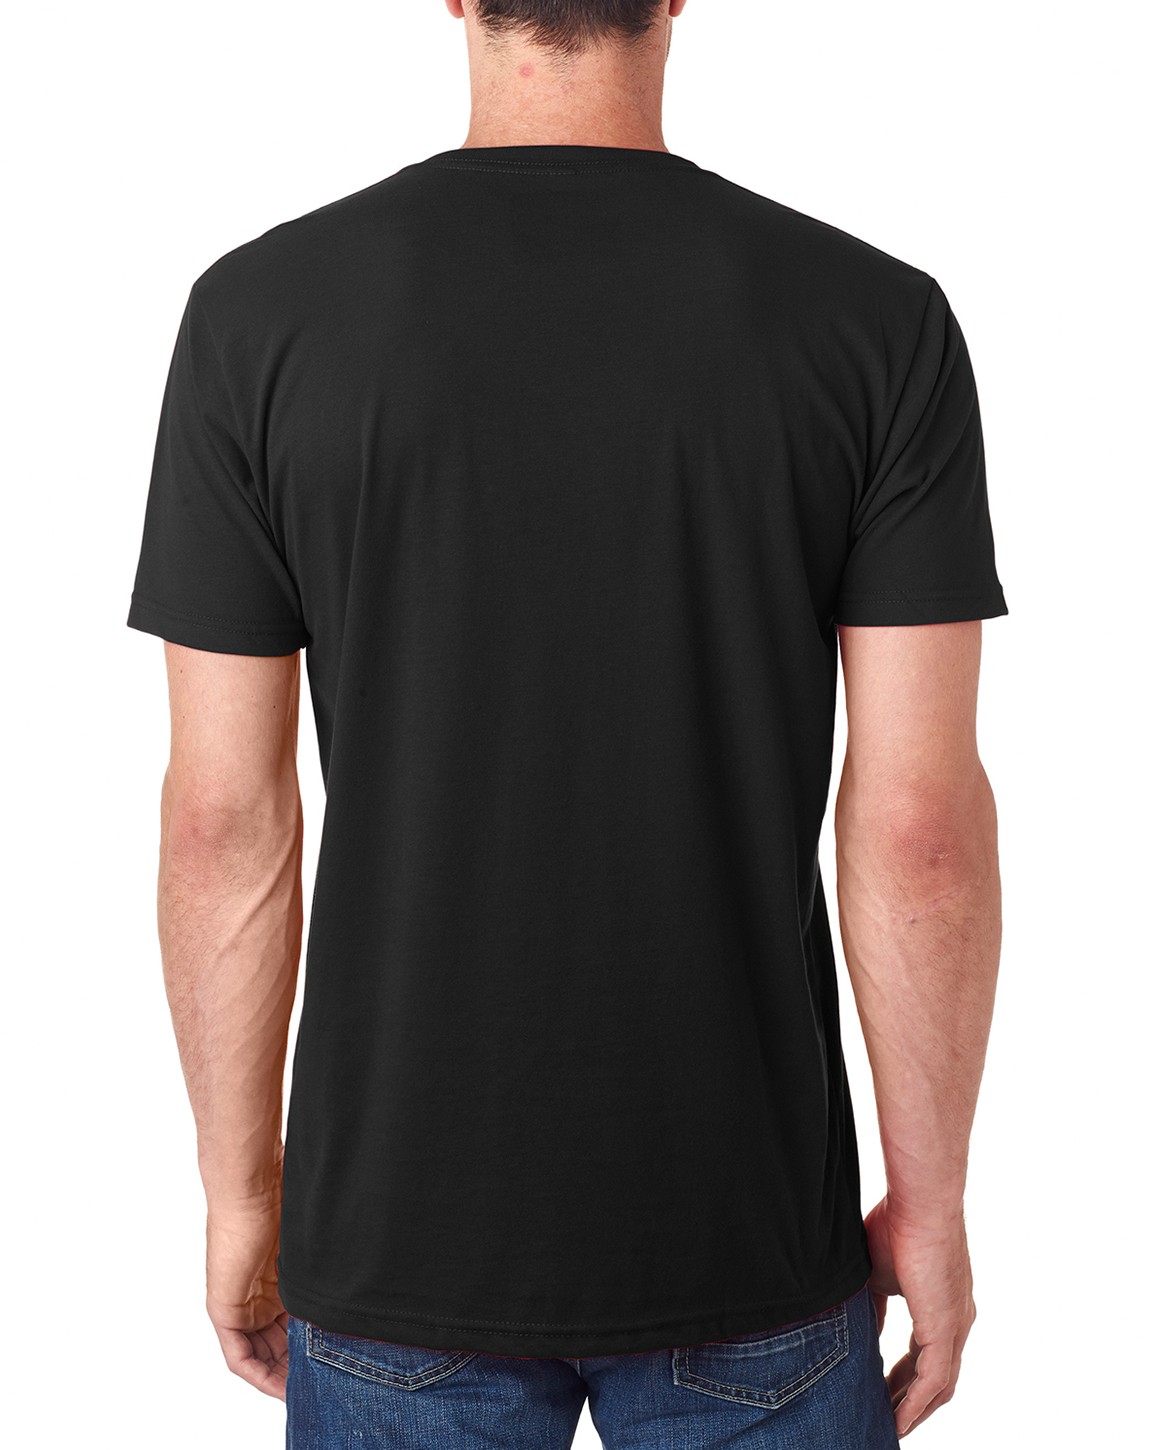 Next Level 6440 Men’s Premium Sueded V shirt - ApparelnBags.com